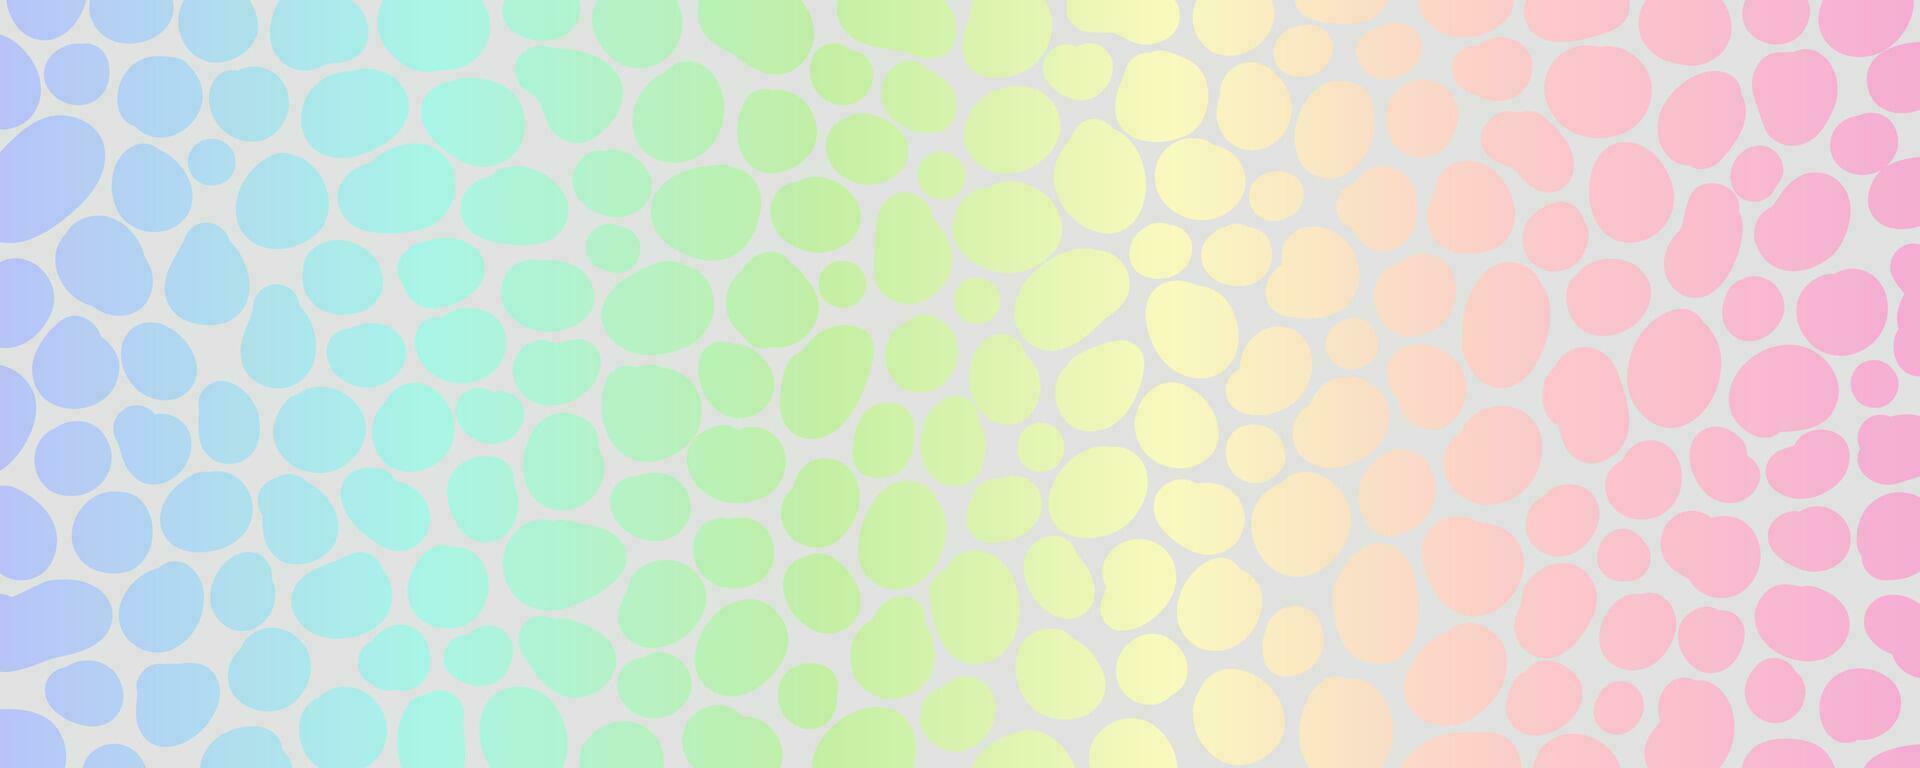 holografische folie achtergrond met iriserend textuur. regenboog en zilver helling vector afdrukken. luipaard parelmoer abstract gradatie ontwerp. glimmend dier dots behang